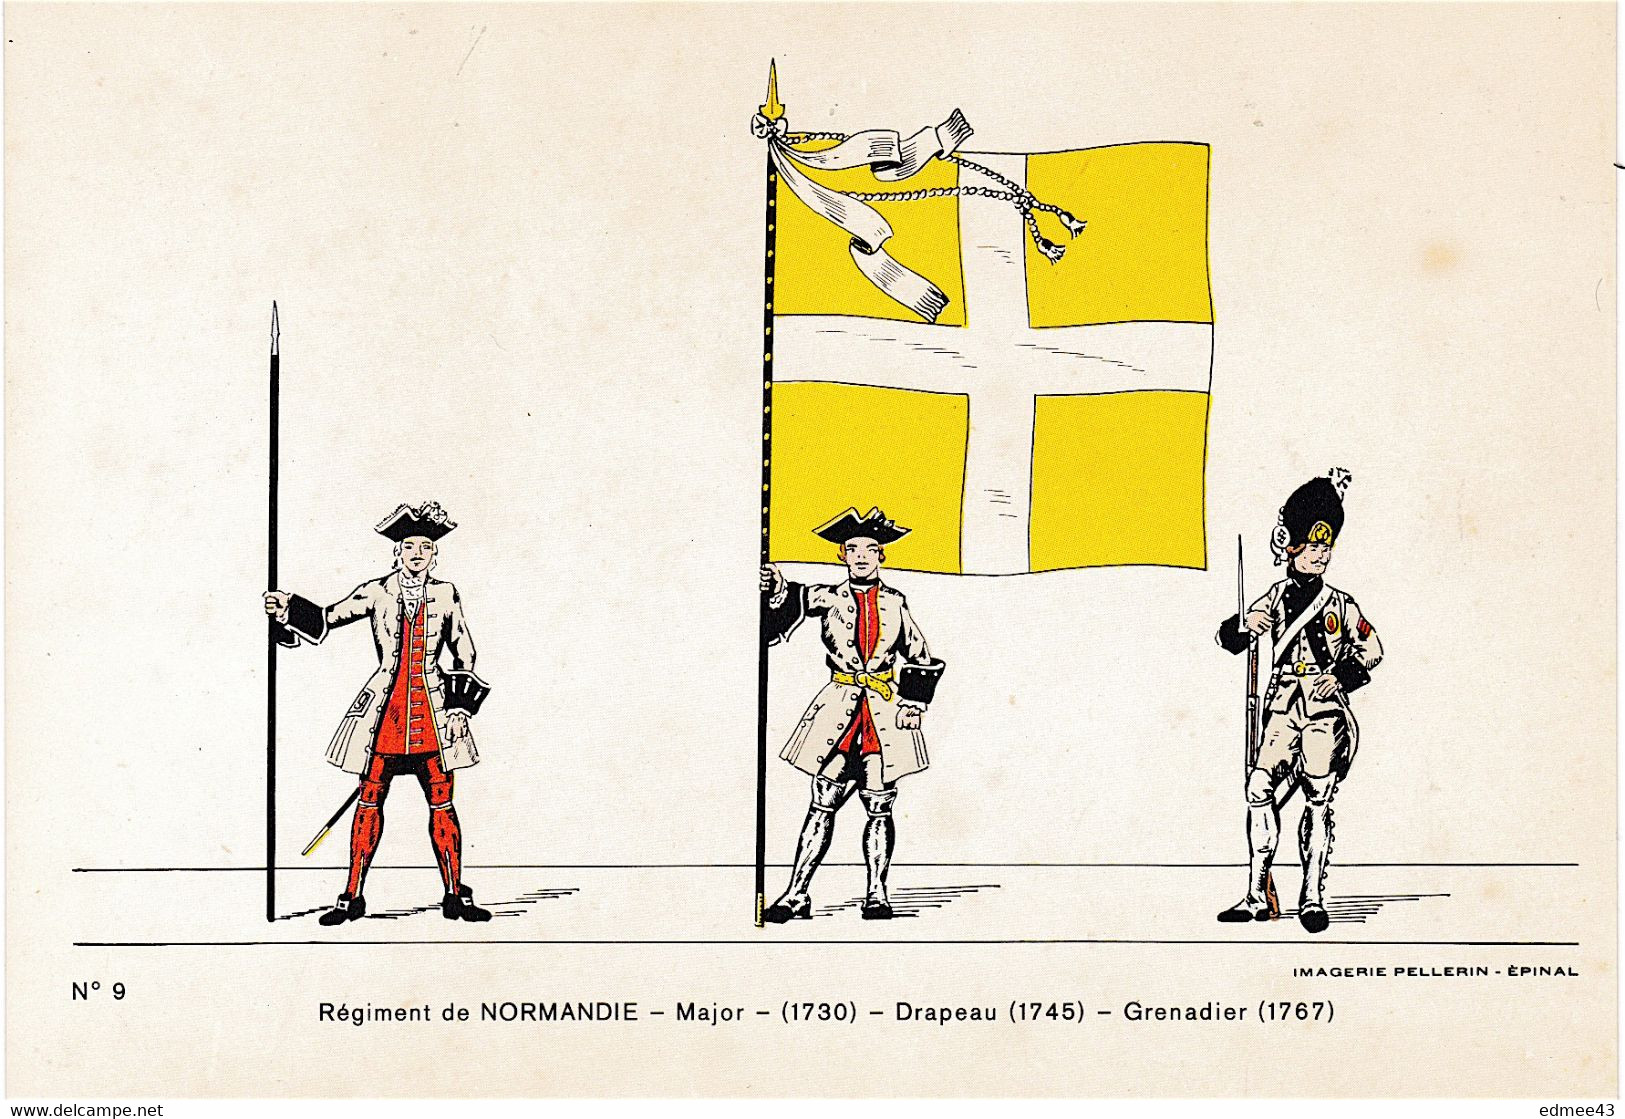 Jolie CP Série éditée En 1978 Imagerie Pellerin, N°9 Régiment De Normandie,18e Siècle - Banderas